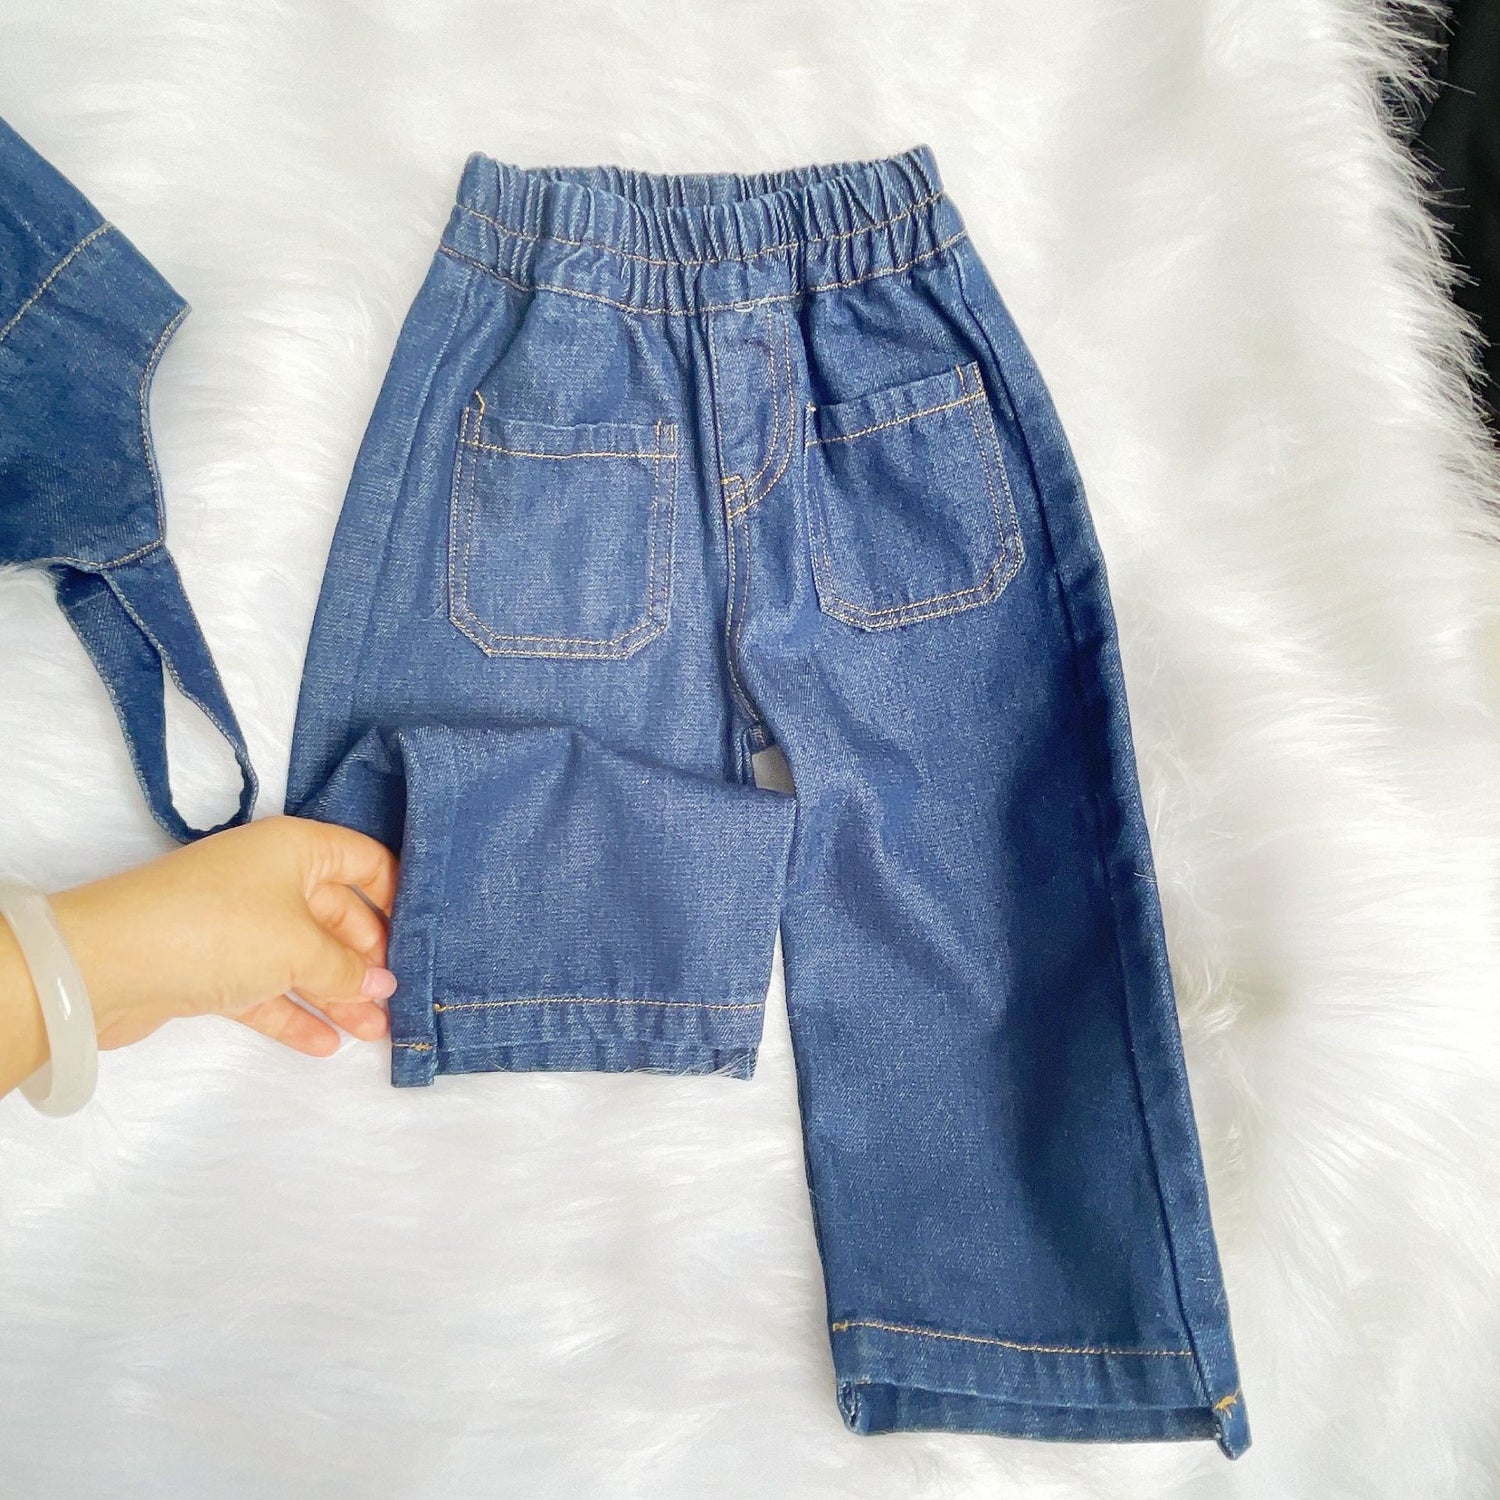 [363542] - Setelan 3 in 1 Inner Rompi Denim Celana Jeans Anak Perempuan - Motif Casual Plain